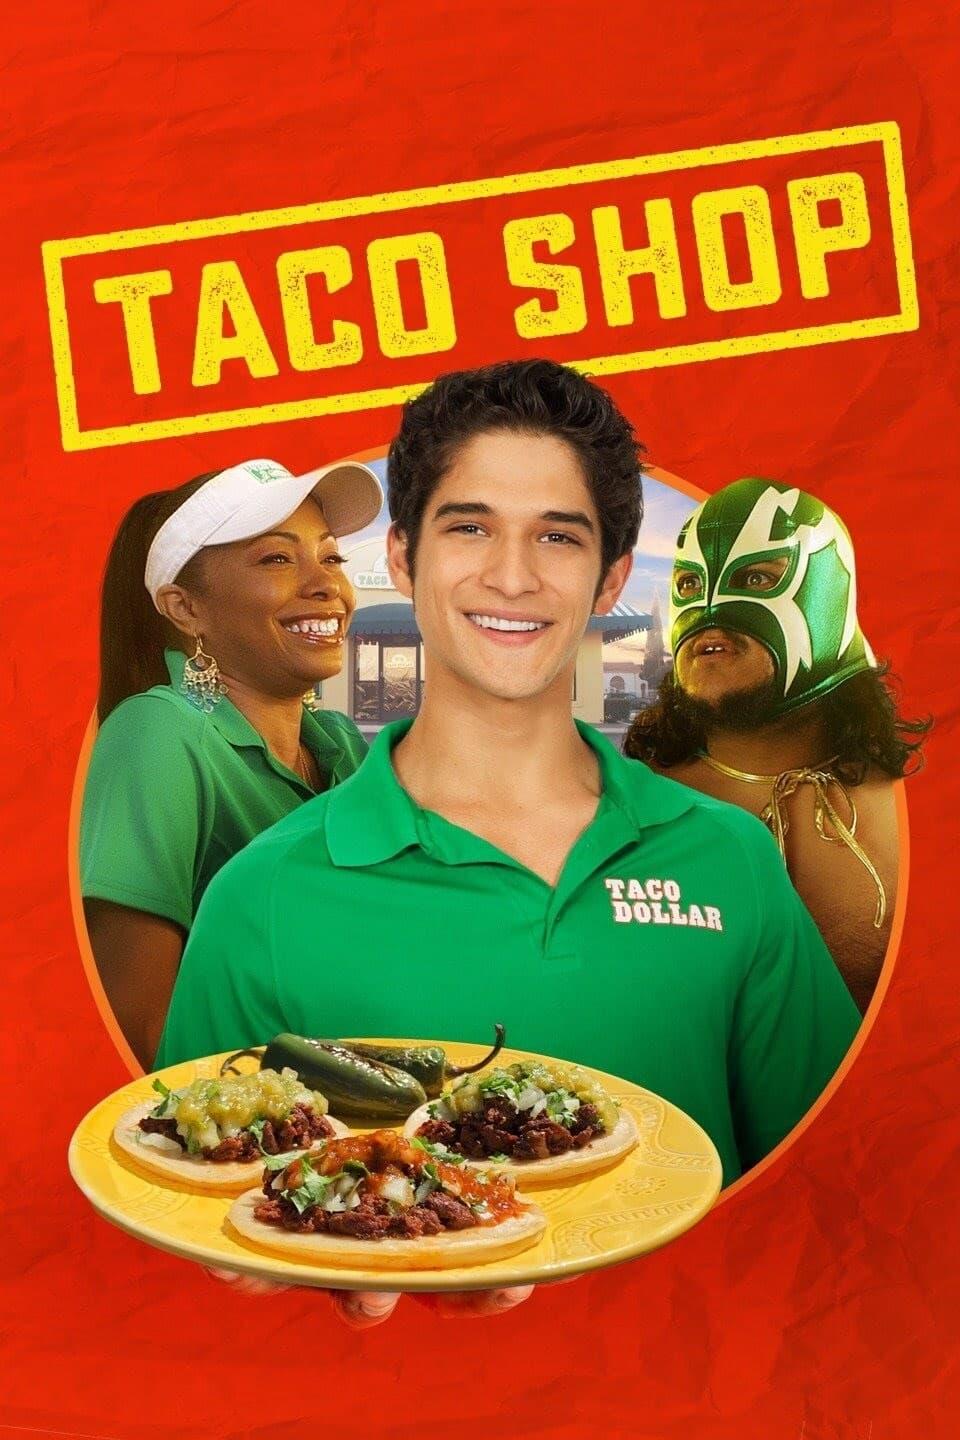 Taco Shop poster